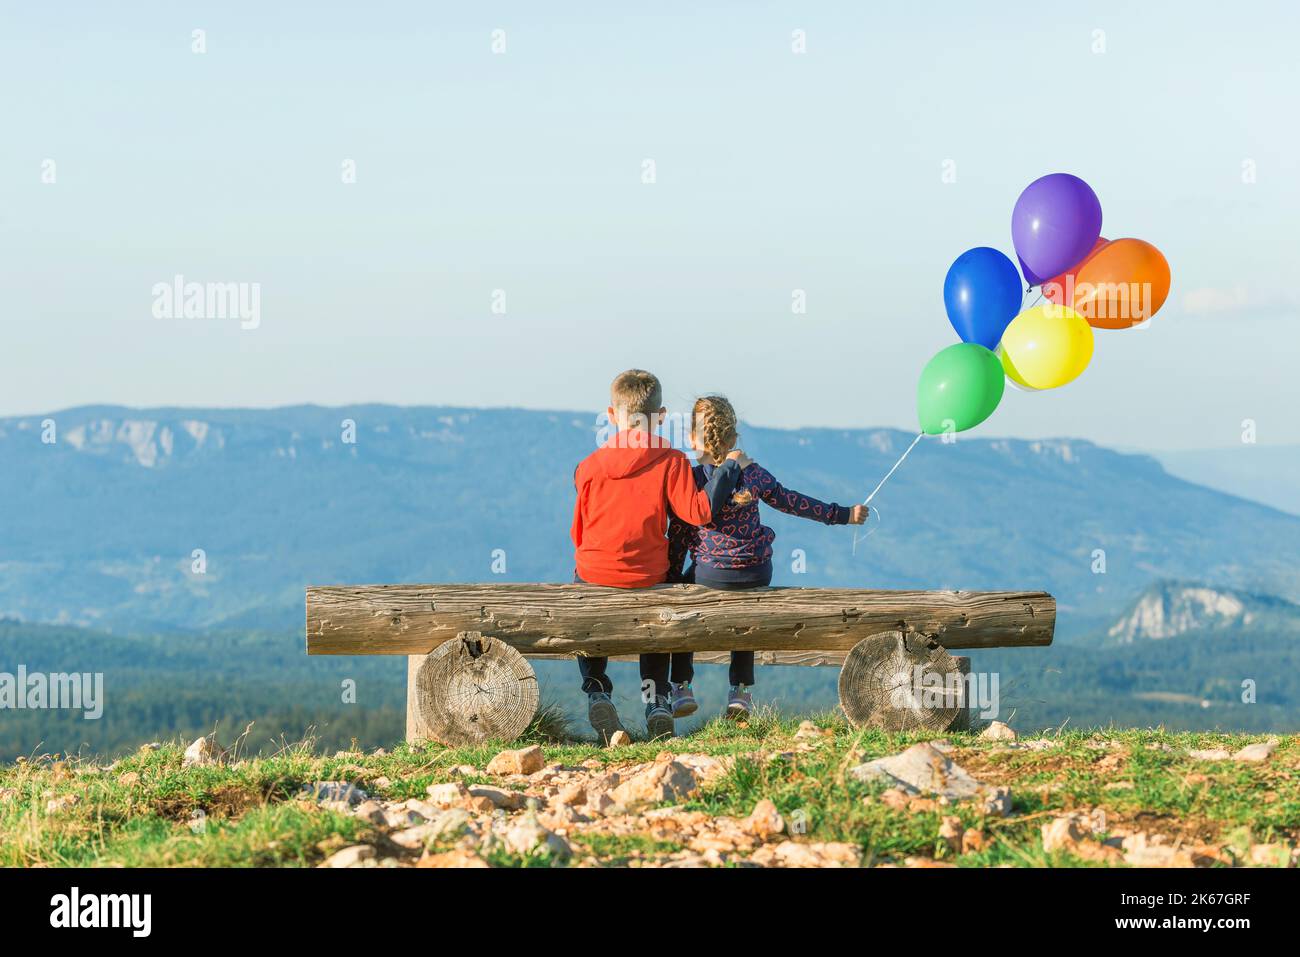 Une fille et un garçon sont assis sur un banc avec des ballons balançant dans le vent. Vue de l'arrière. Montagne en arrière-plan Banque D'Images